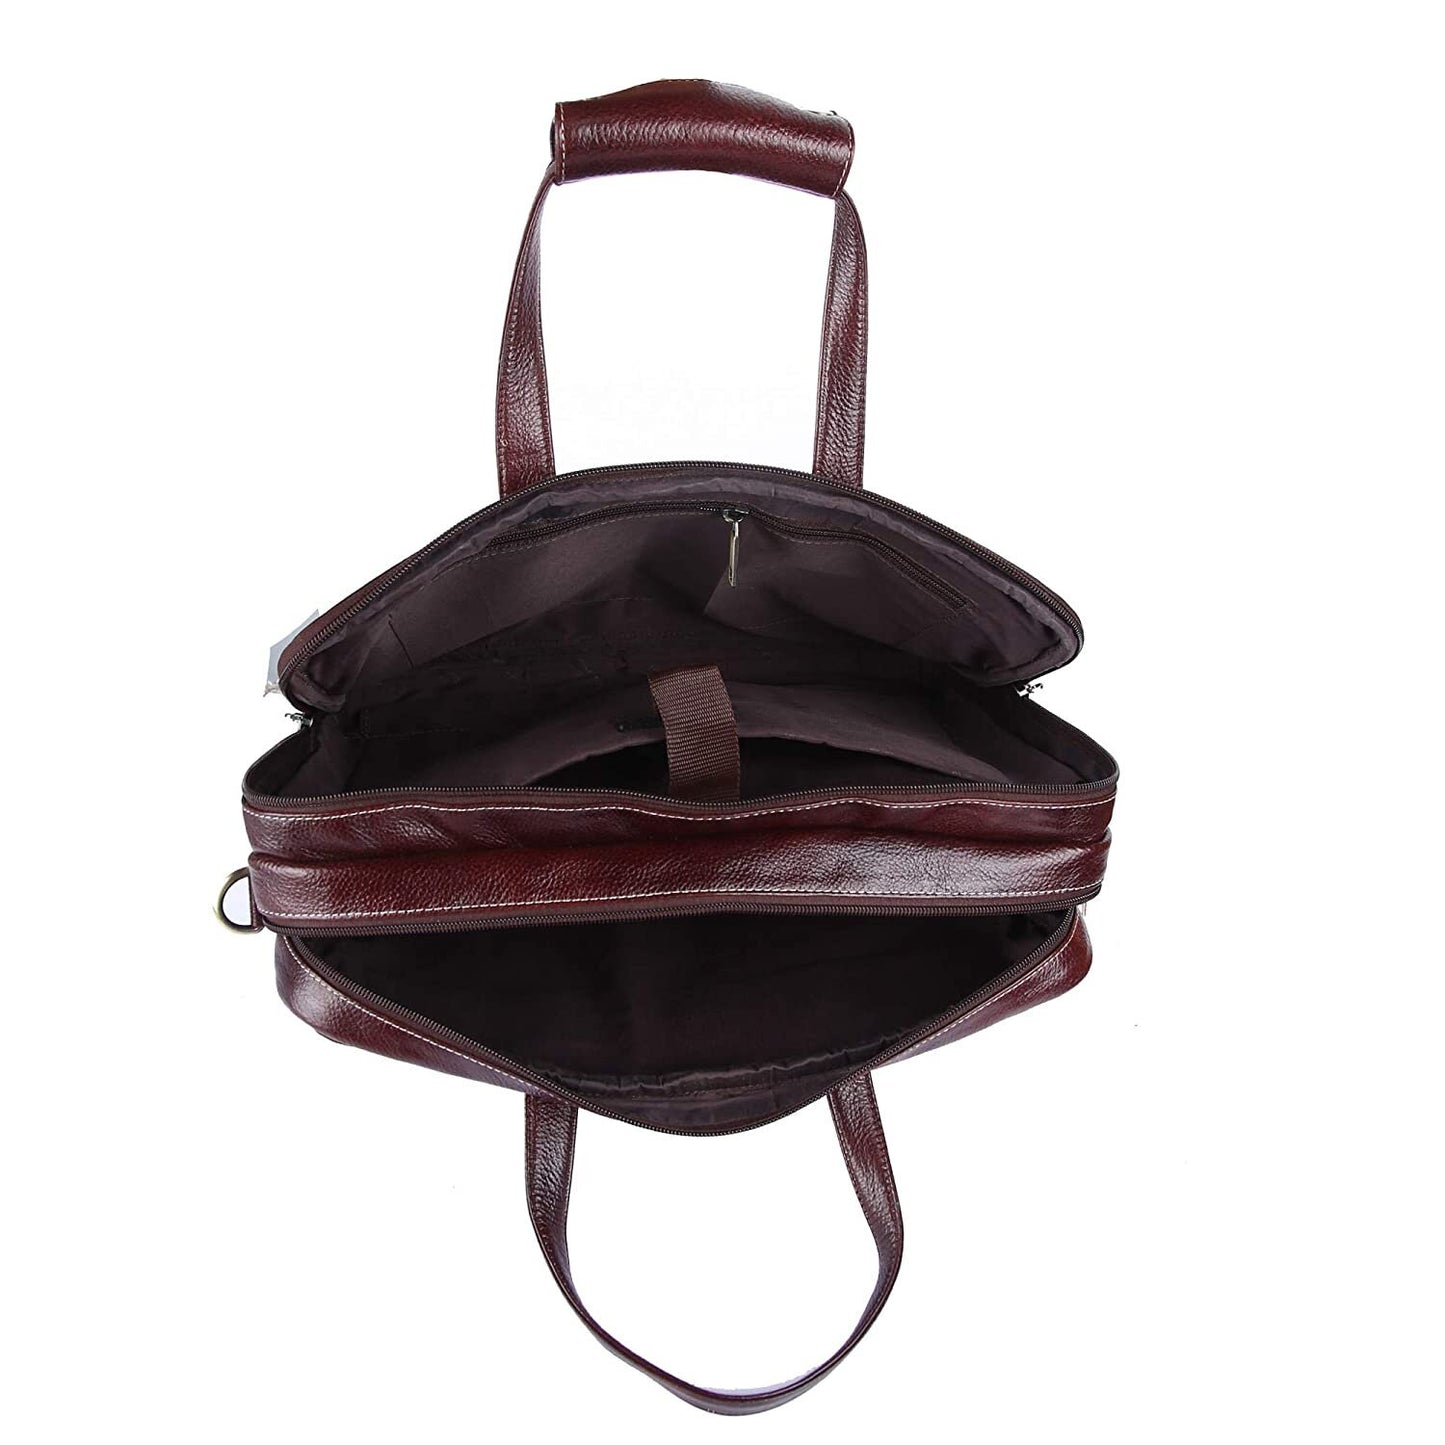 LINDSEY STREET Genuine Leather Laptop Messenger Bag for Men | Leather Briefcase | Leather Office Bag Men | Laptop MacBook iPad Handbag